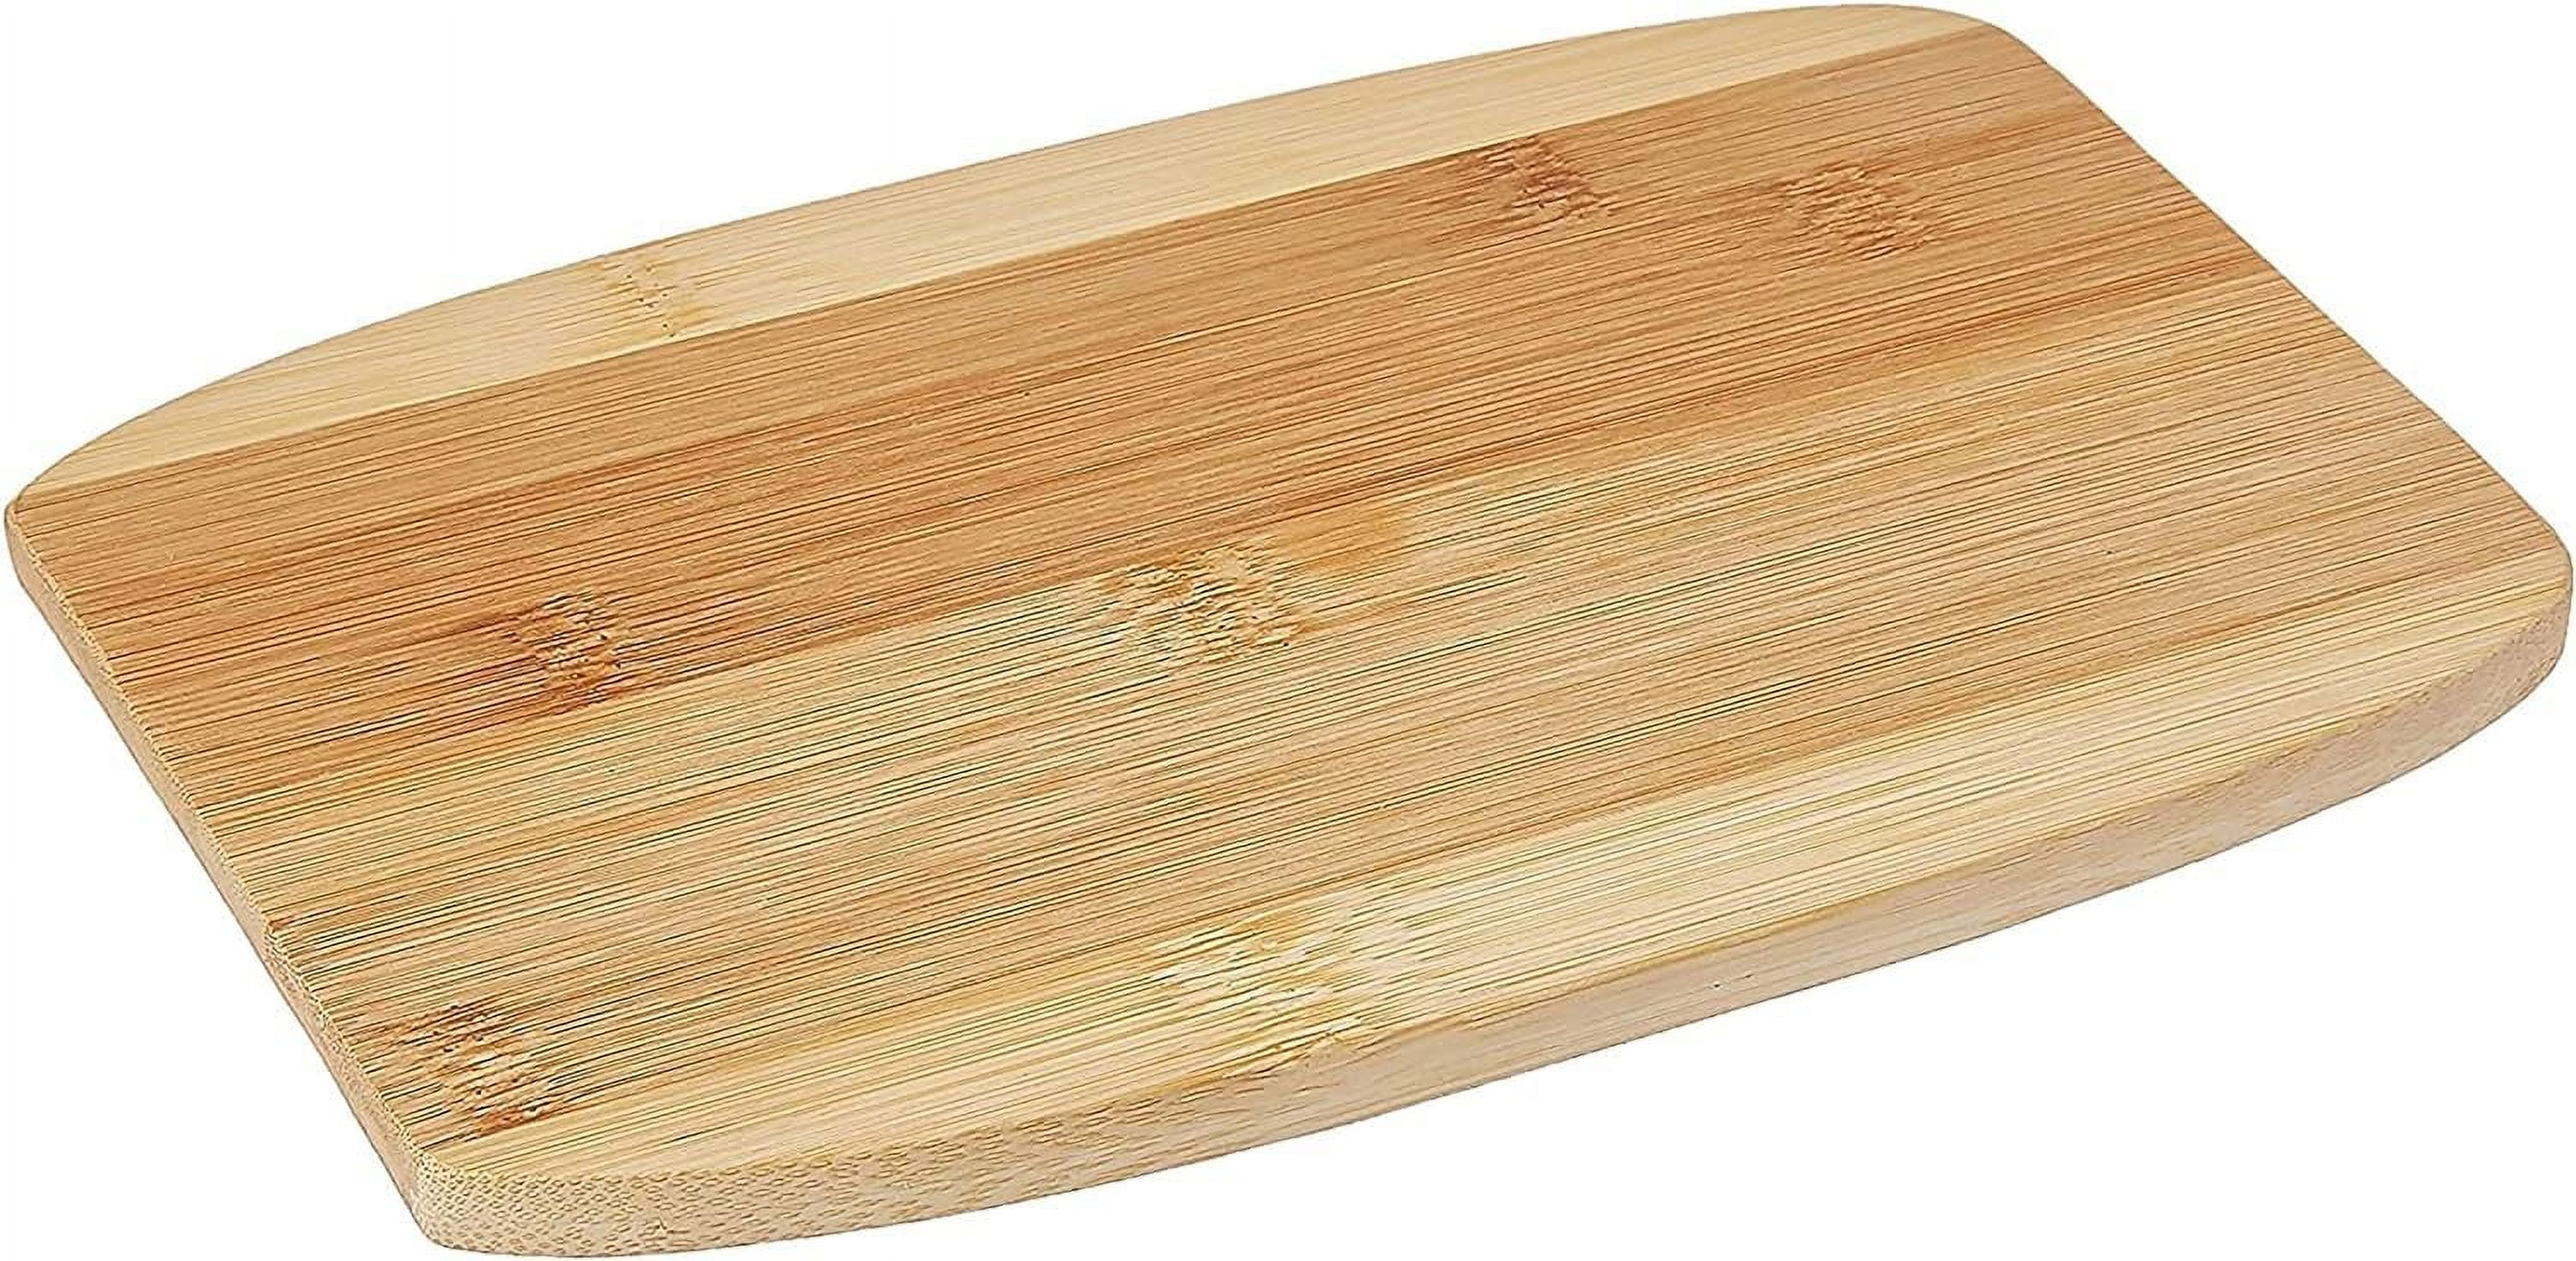 Mini Bamboo Cutting Board